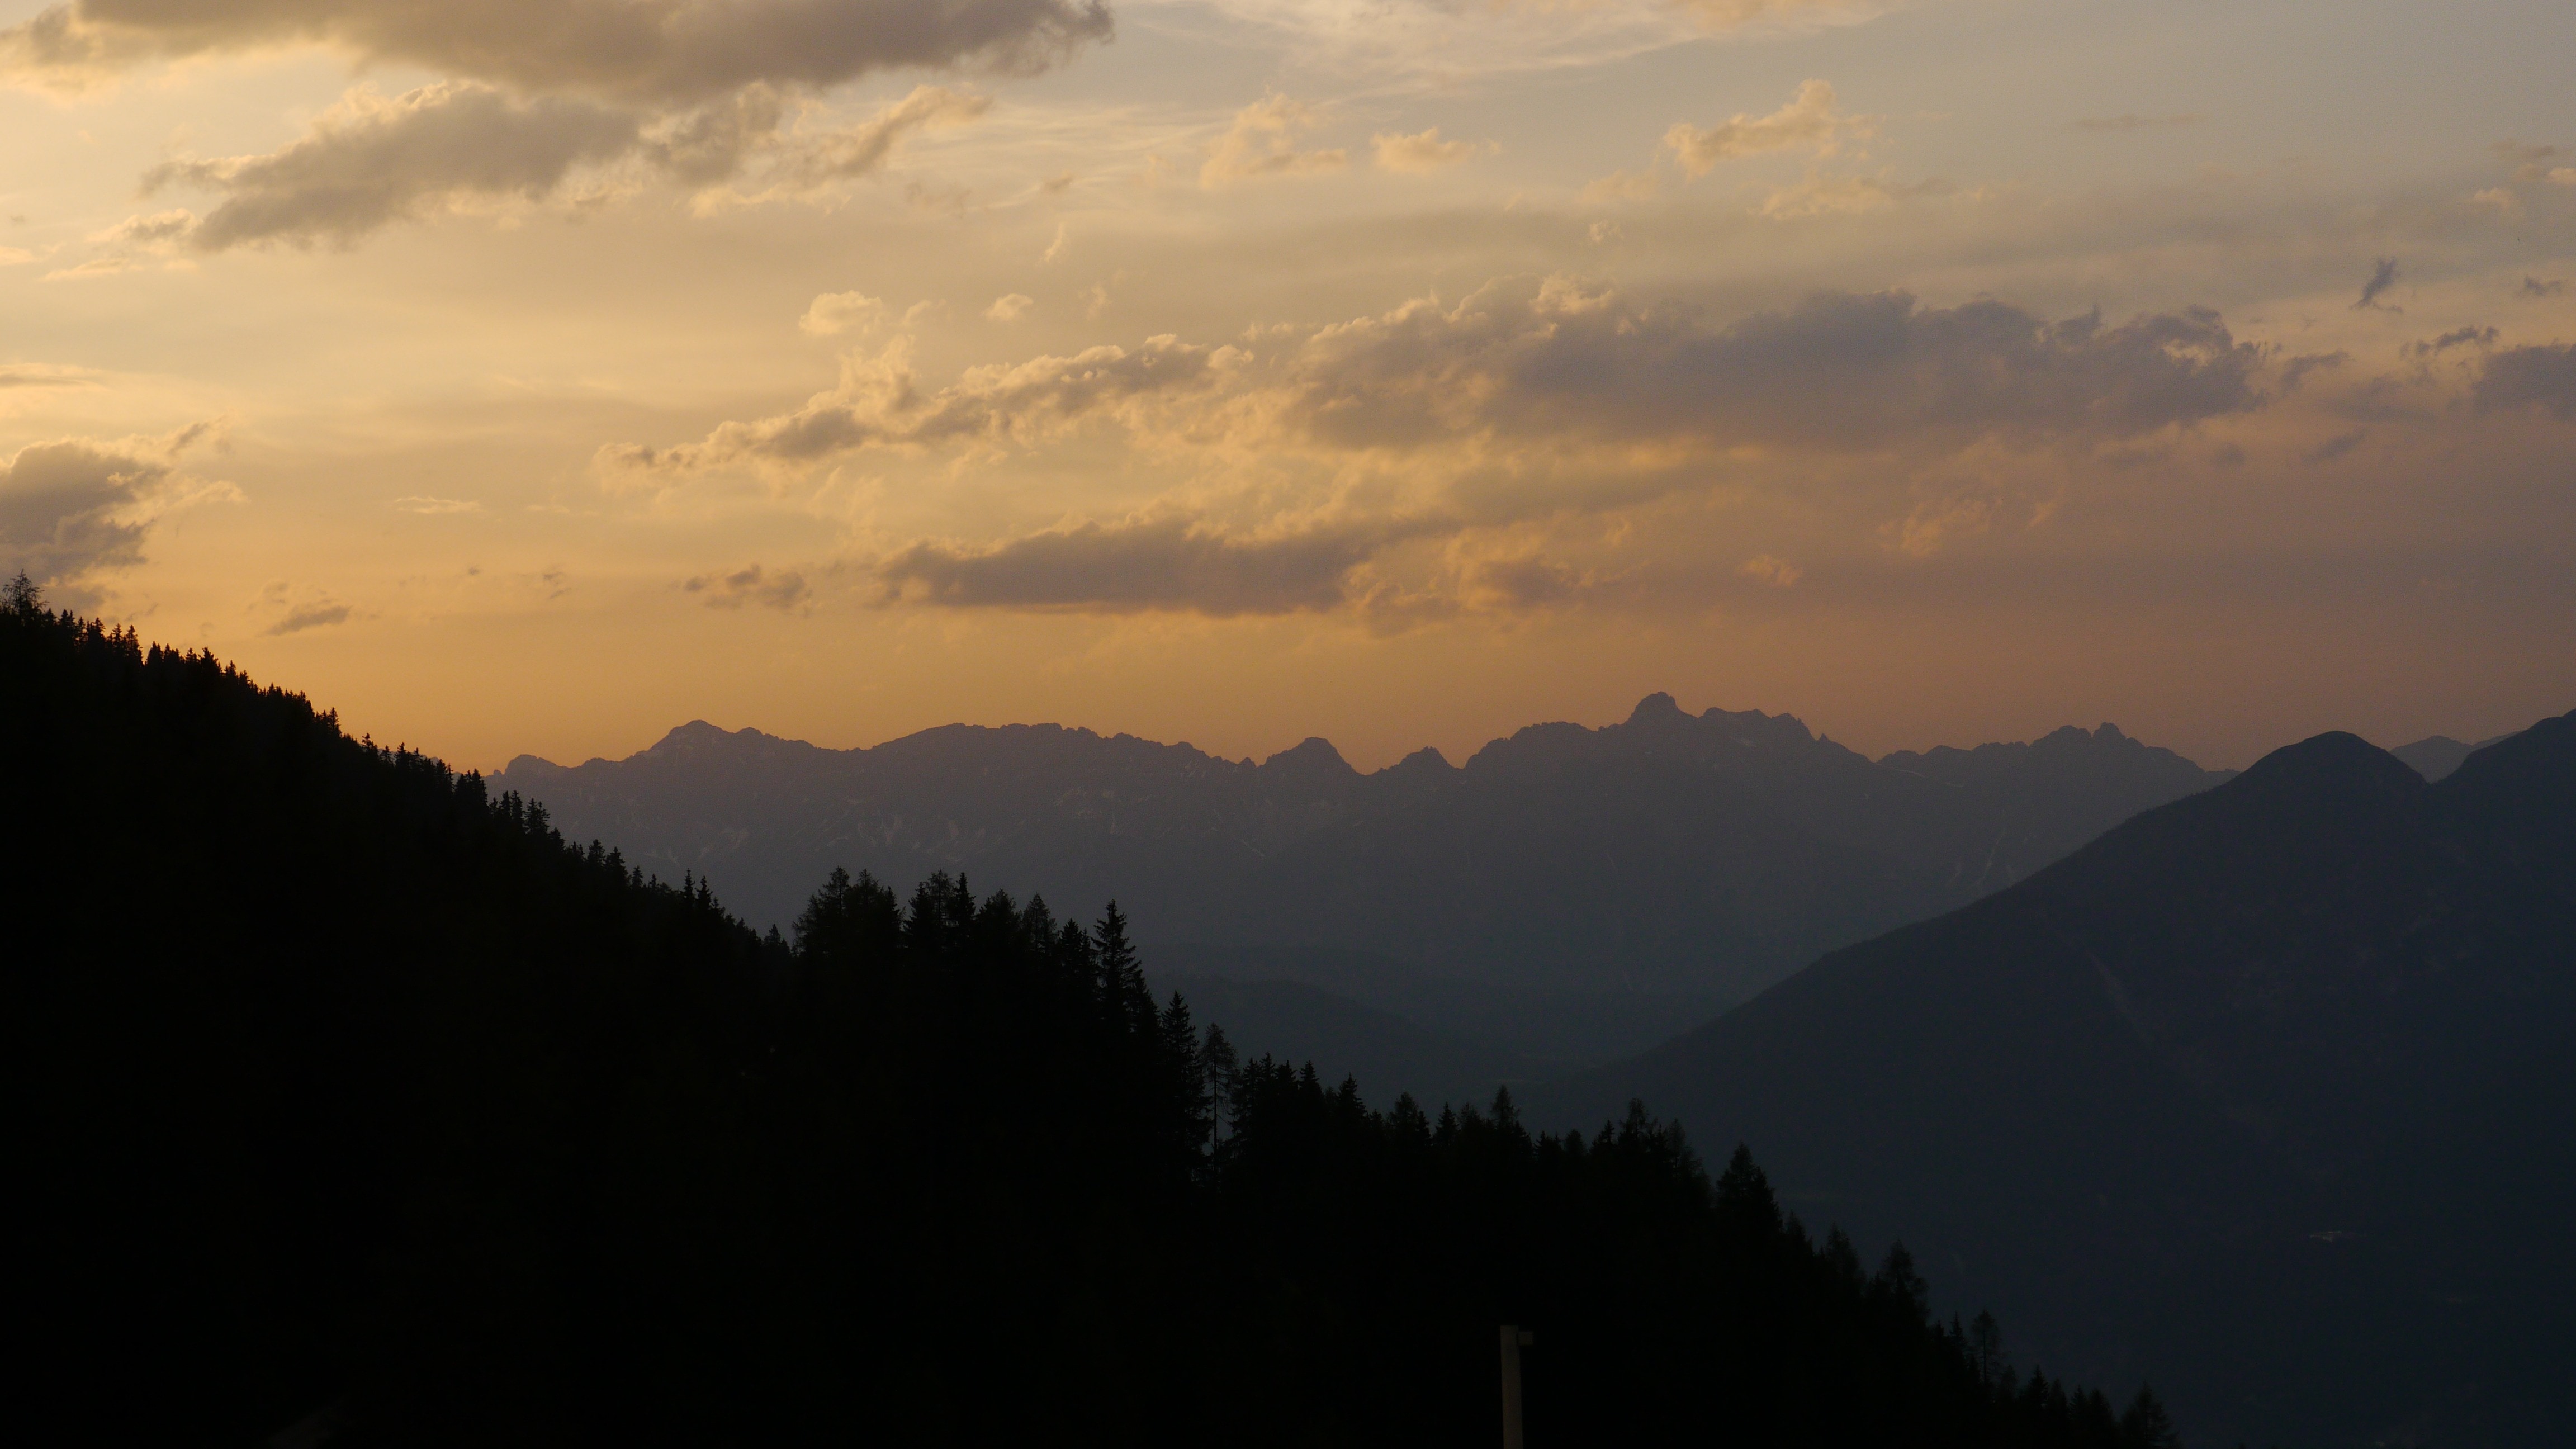 sunset photo of a mountain range